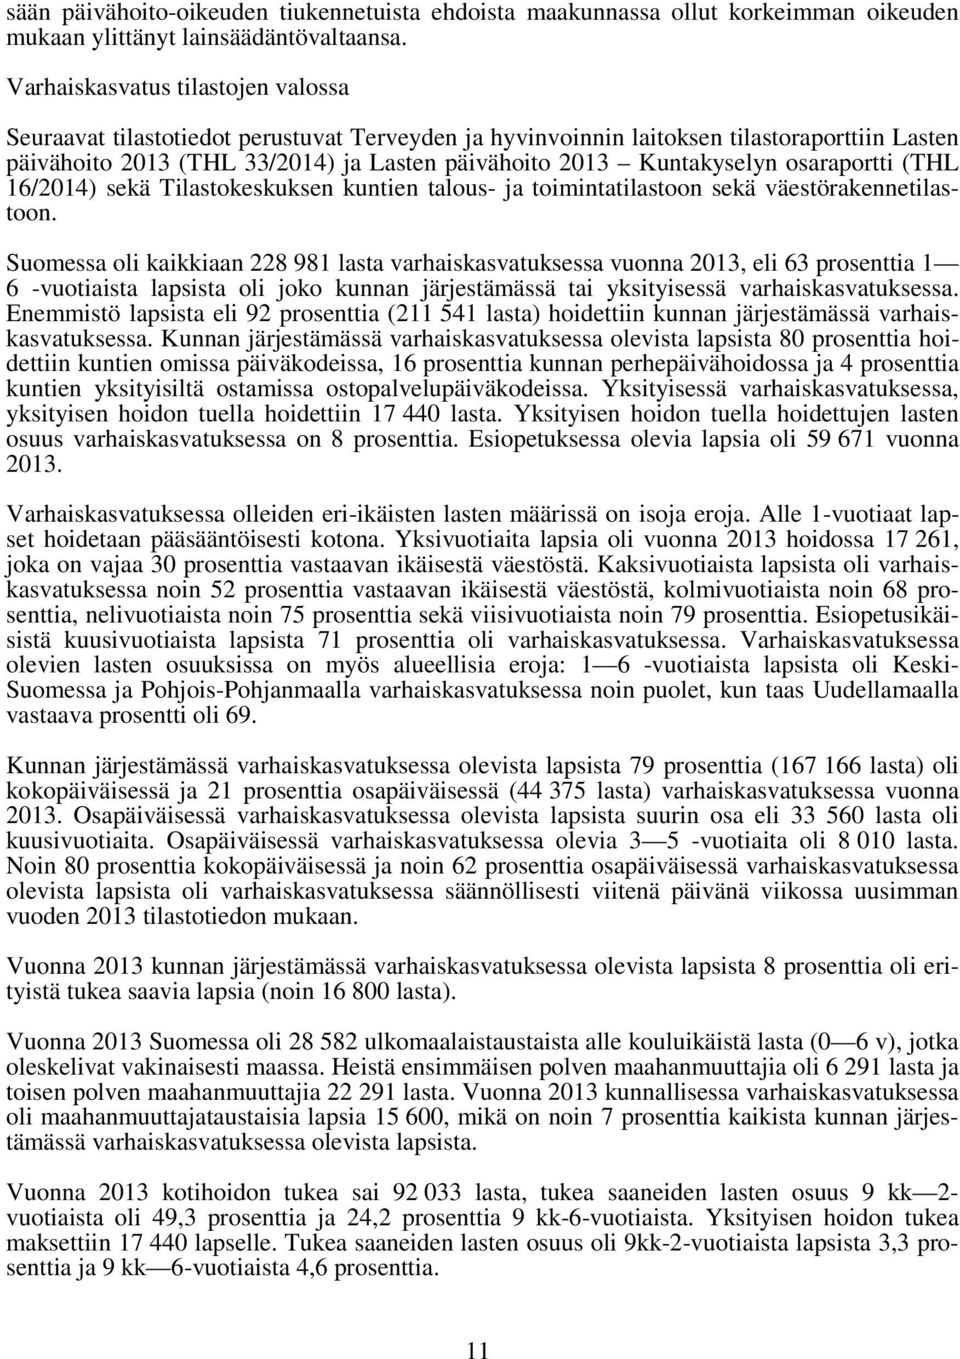 osaraportti (THL 16/2014) sekä Tilastokeskuksen kuntien talous- ja toimintatilastoon sekä väestörakennetilastoon.